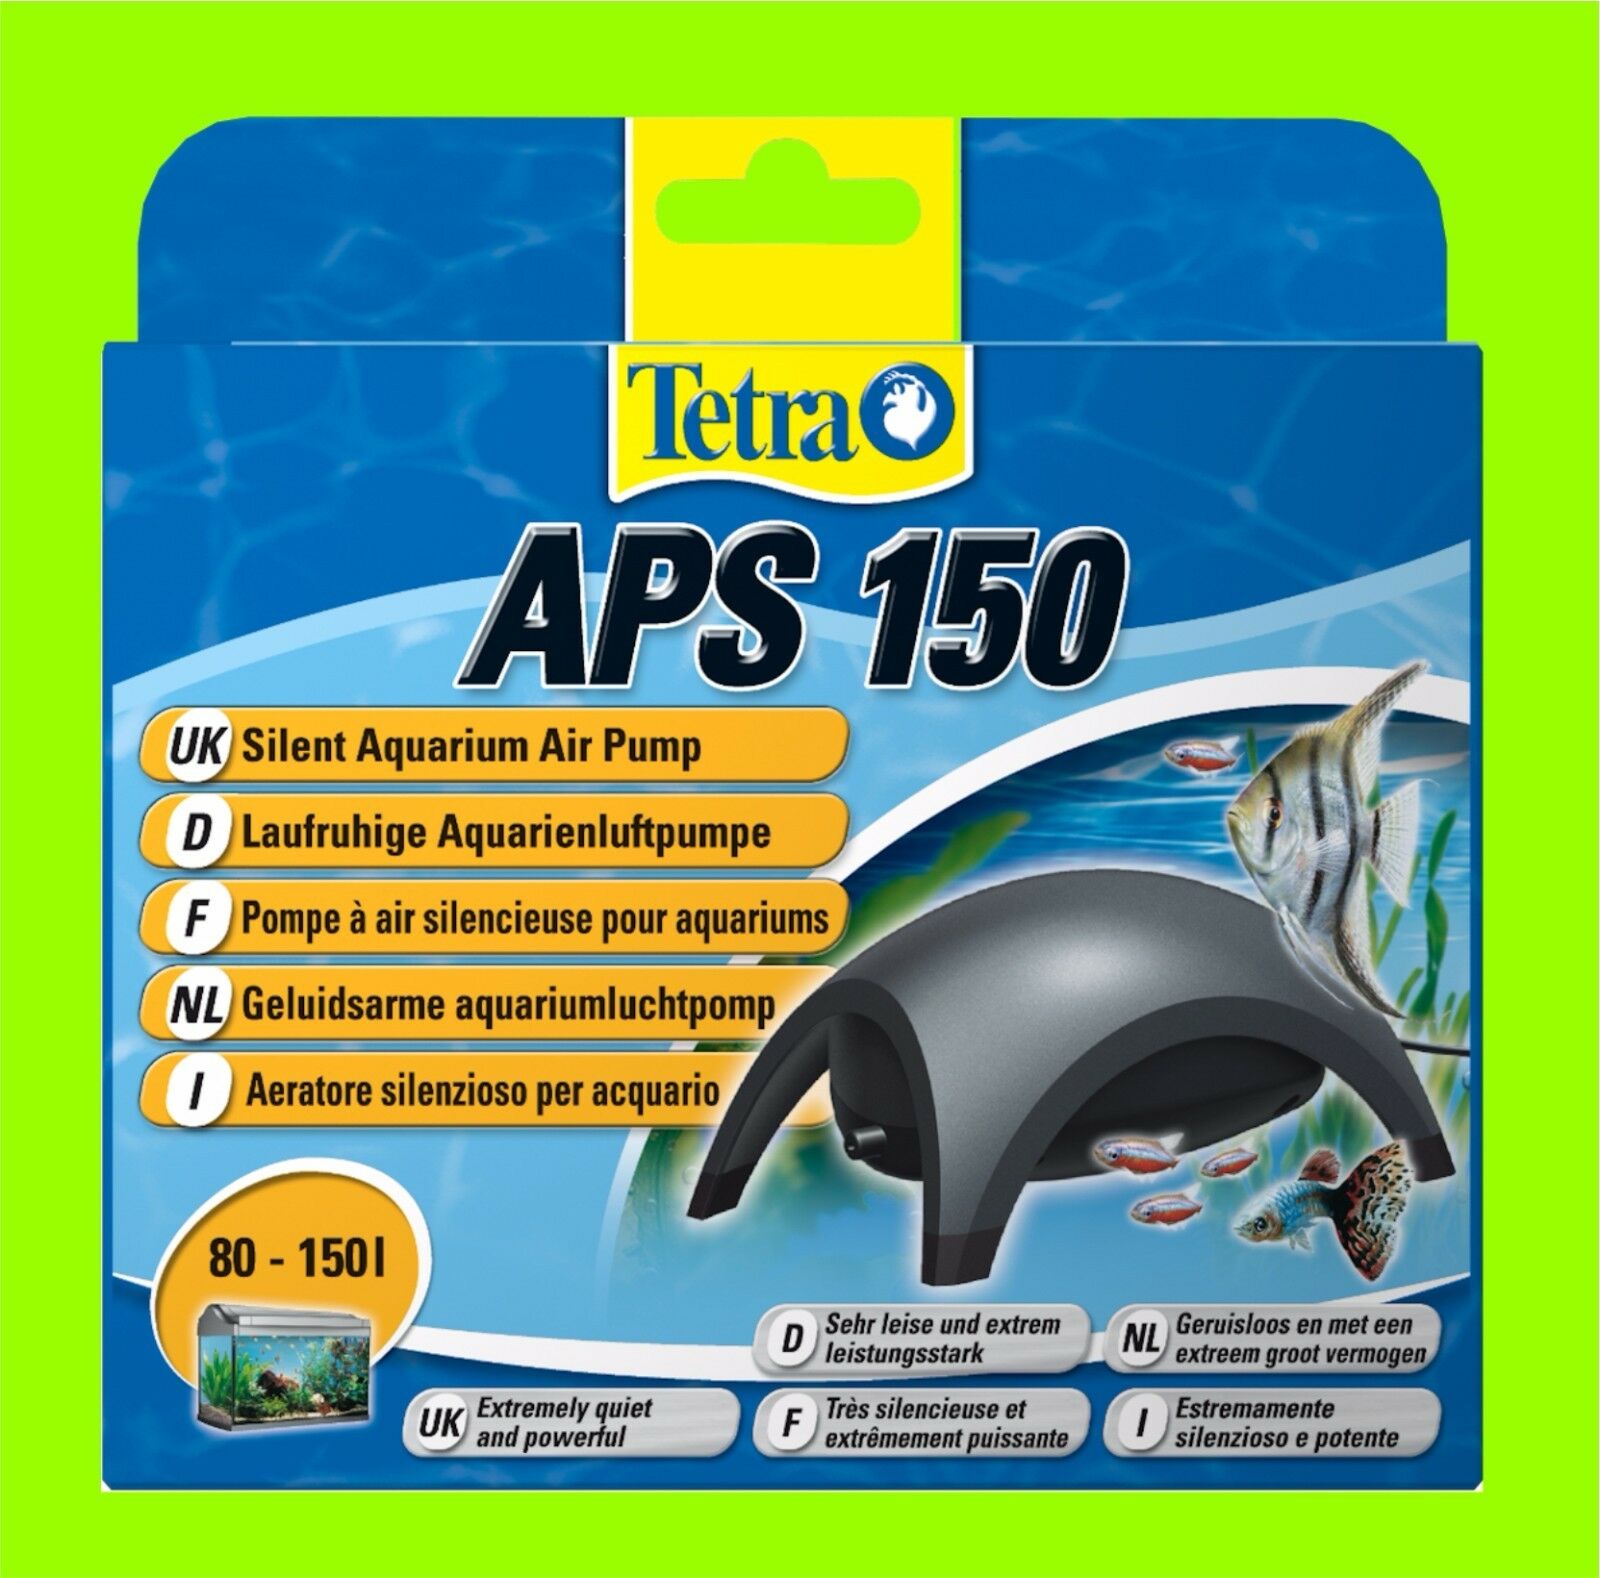 Tetra APS 150 Aquarienluftpumpe sehr leise Luftpumpe für 80-150l Aquarium, Luftpumpen, Aquaristik